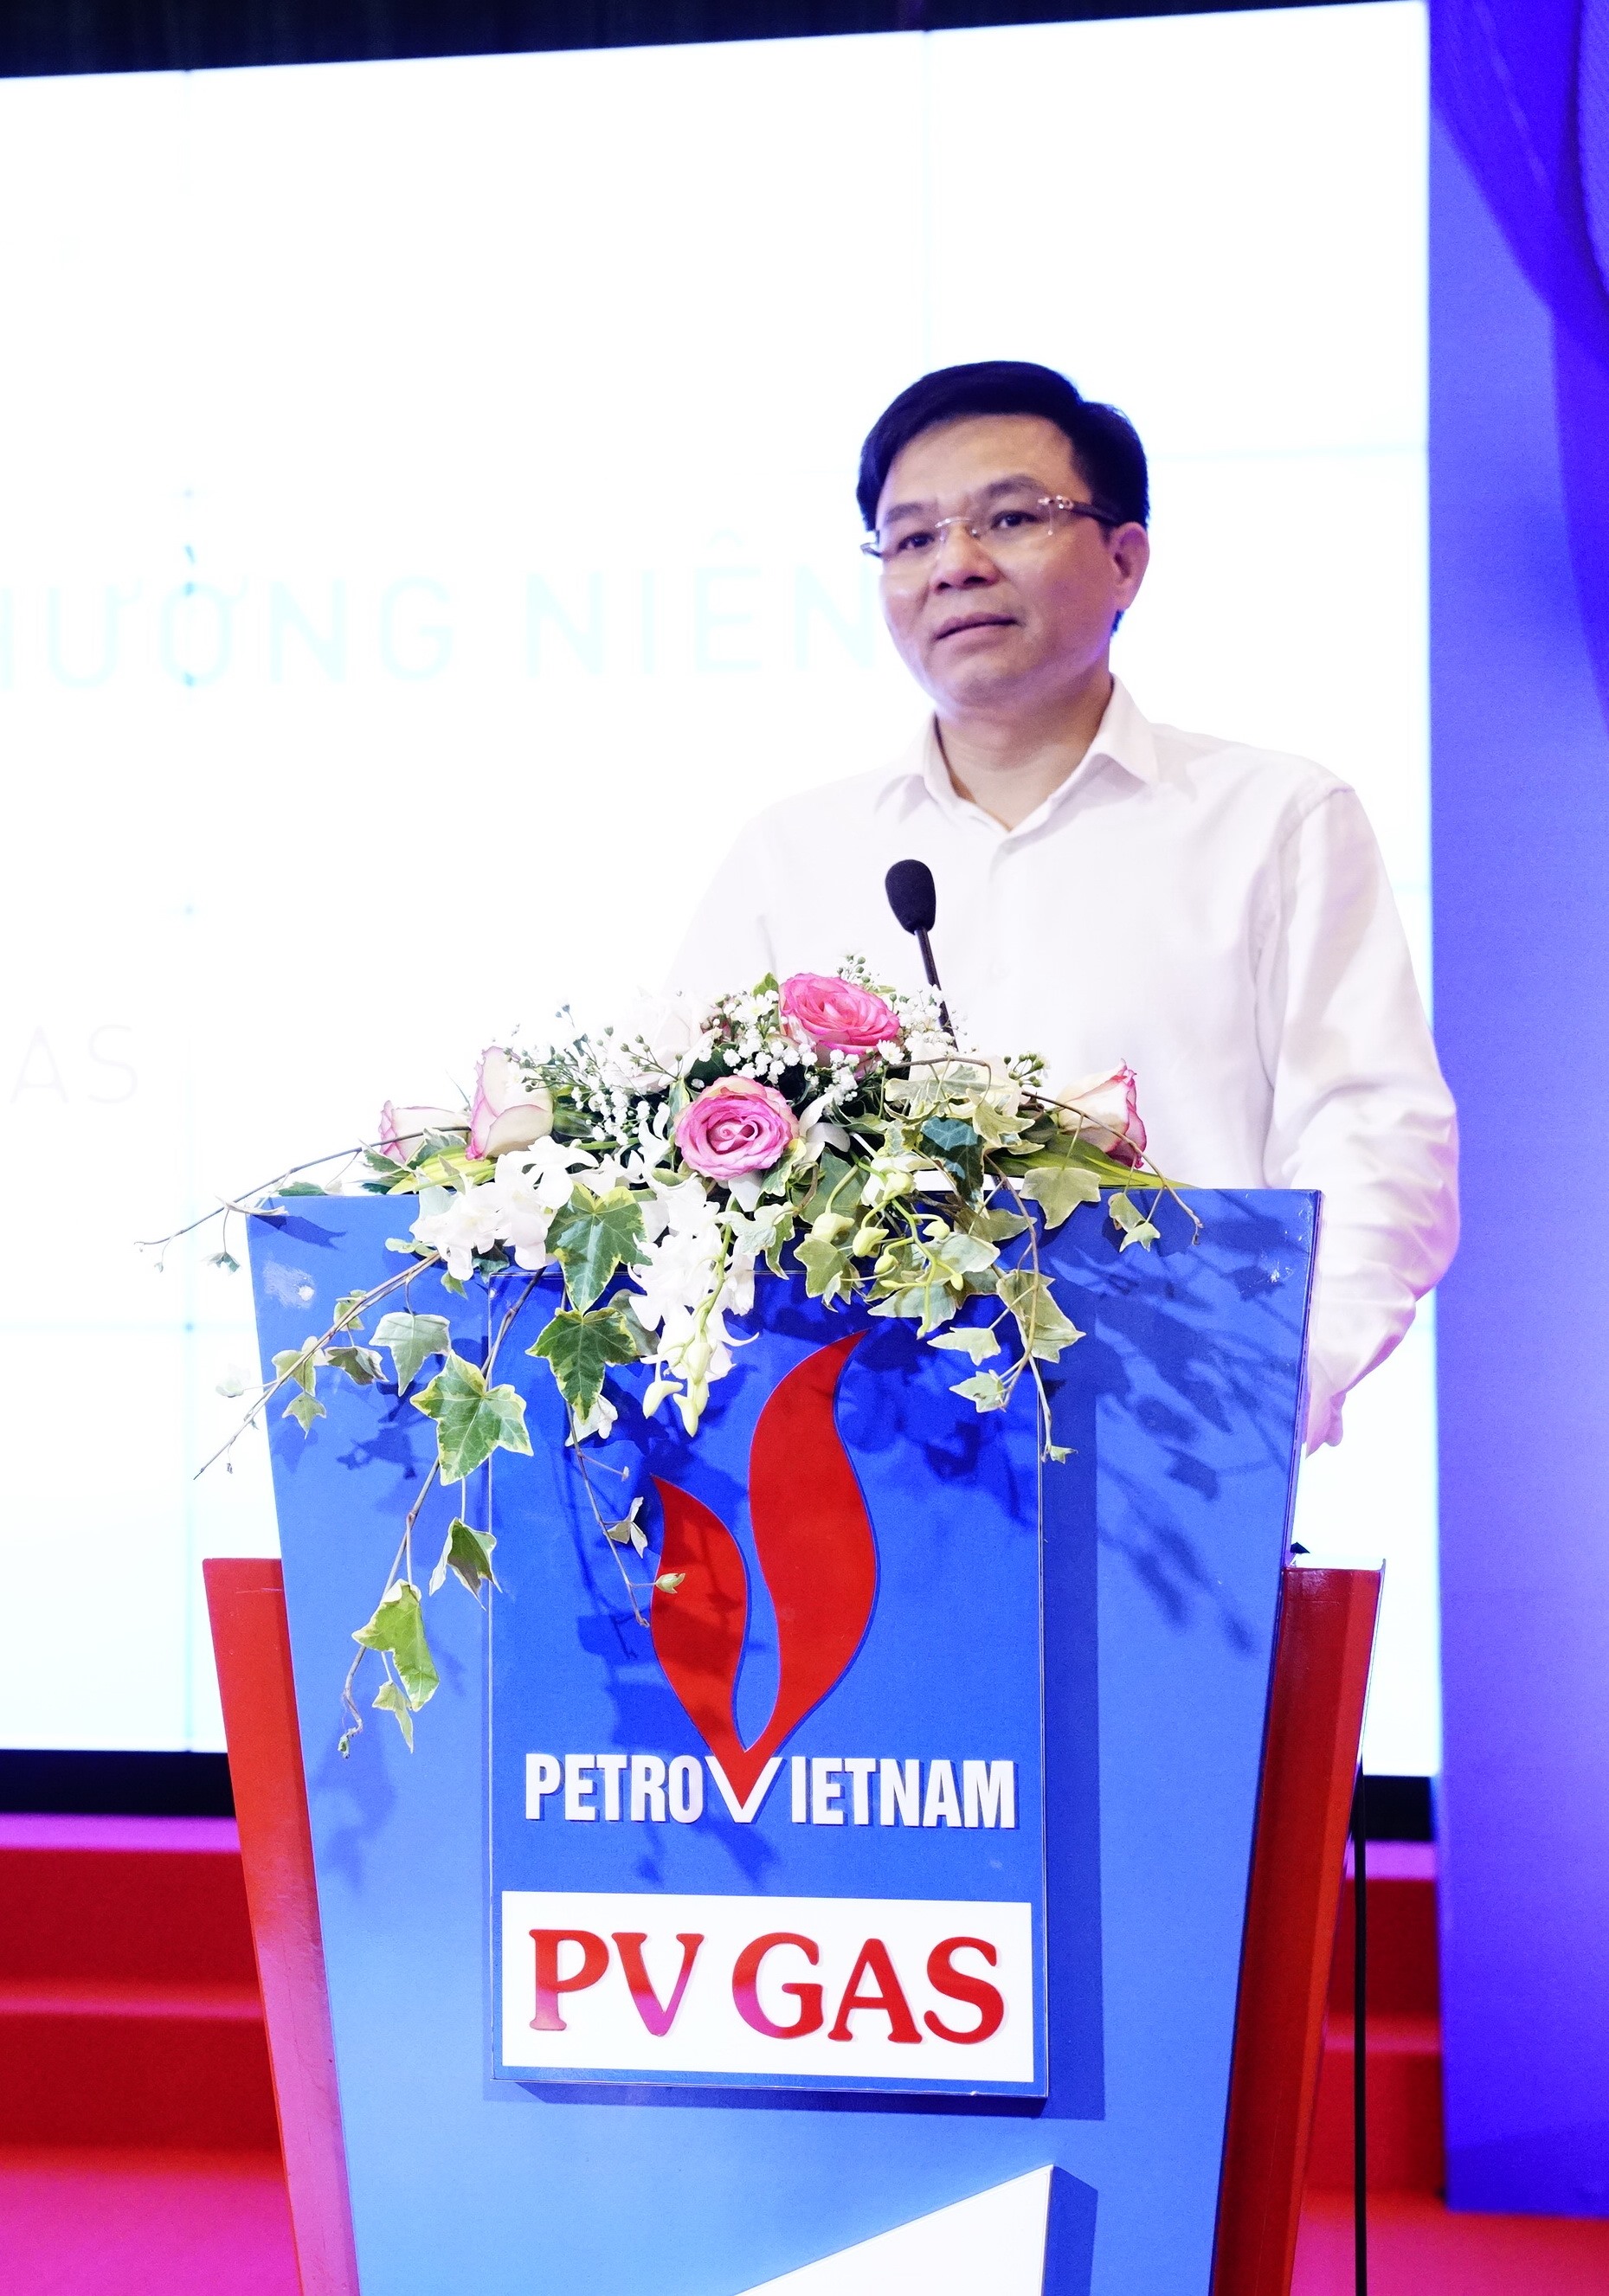 Tổng giám đốc PVN - ông Lê Mạnh Hùng phát biểu tại Đại hội. Ảnh: PV GAS